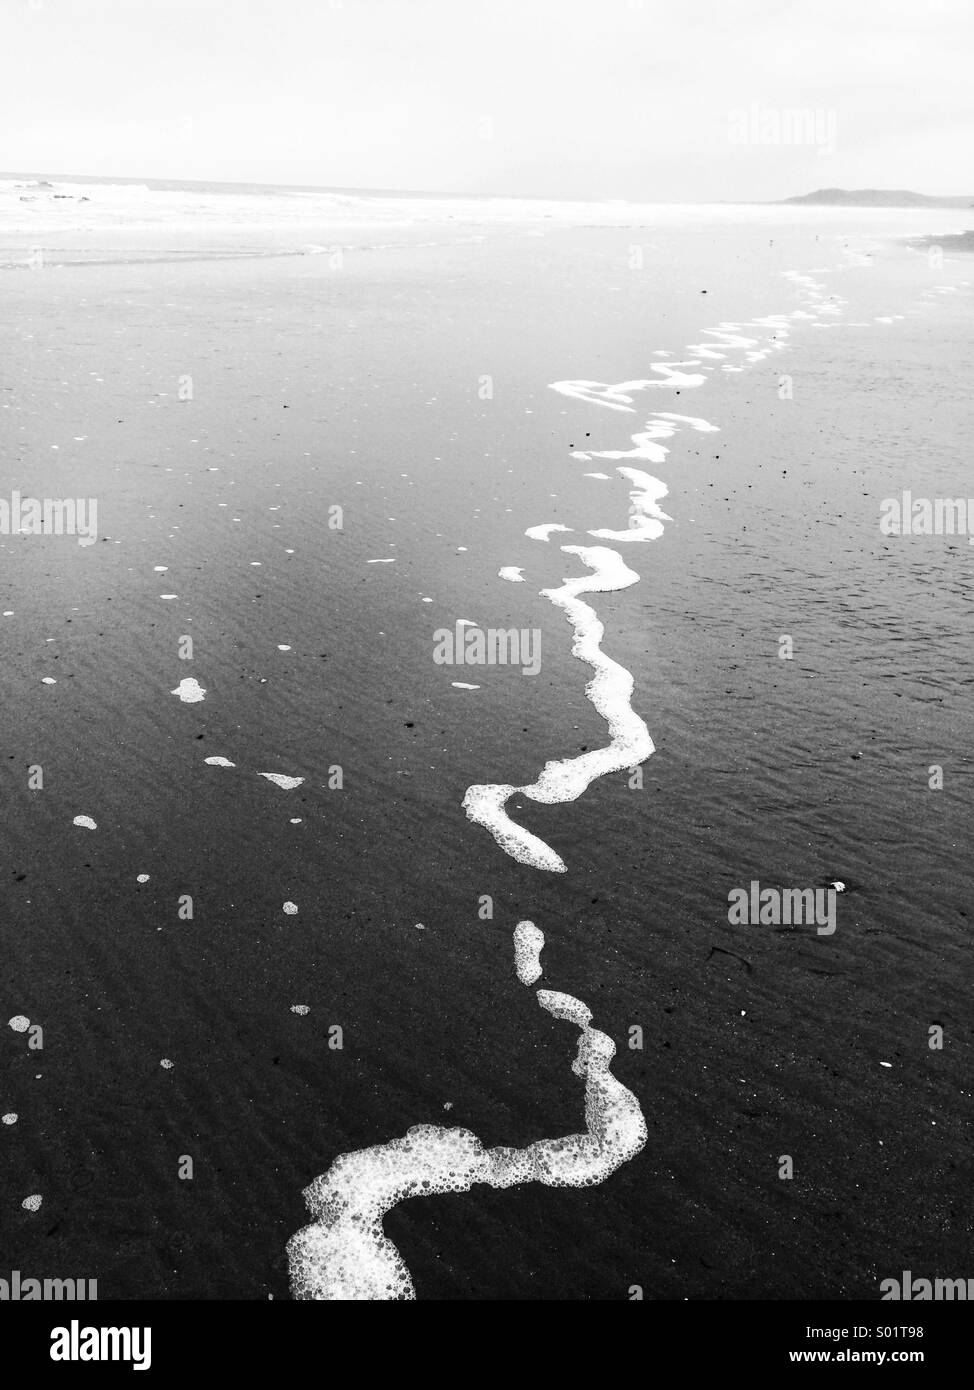 Tide foam on beach Stock Photo